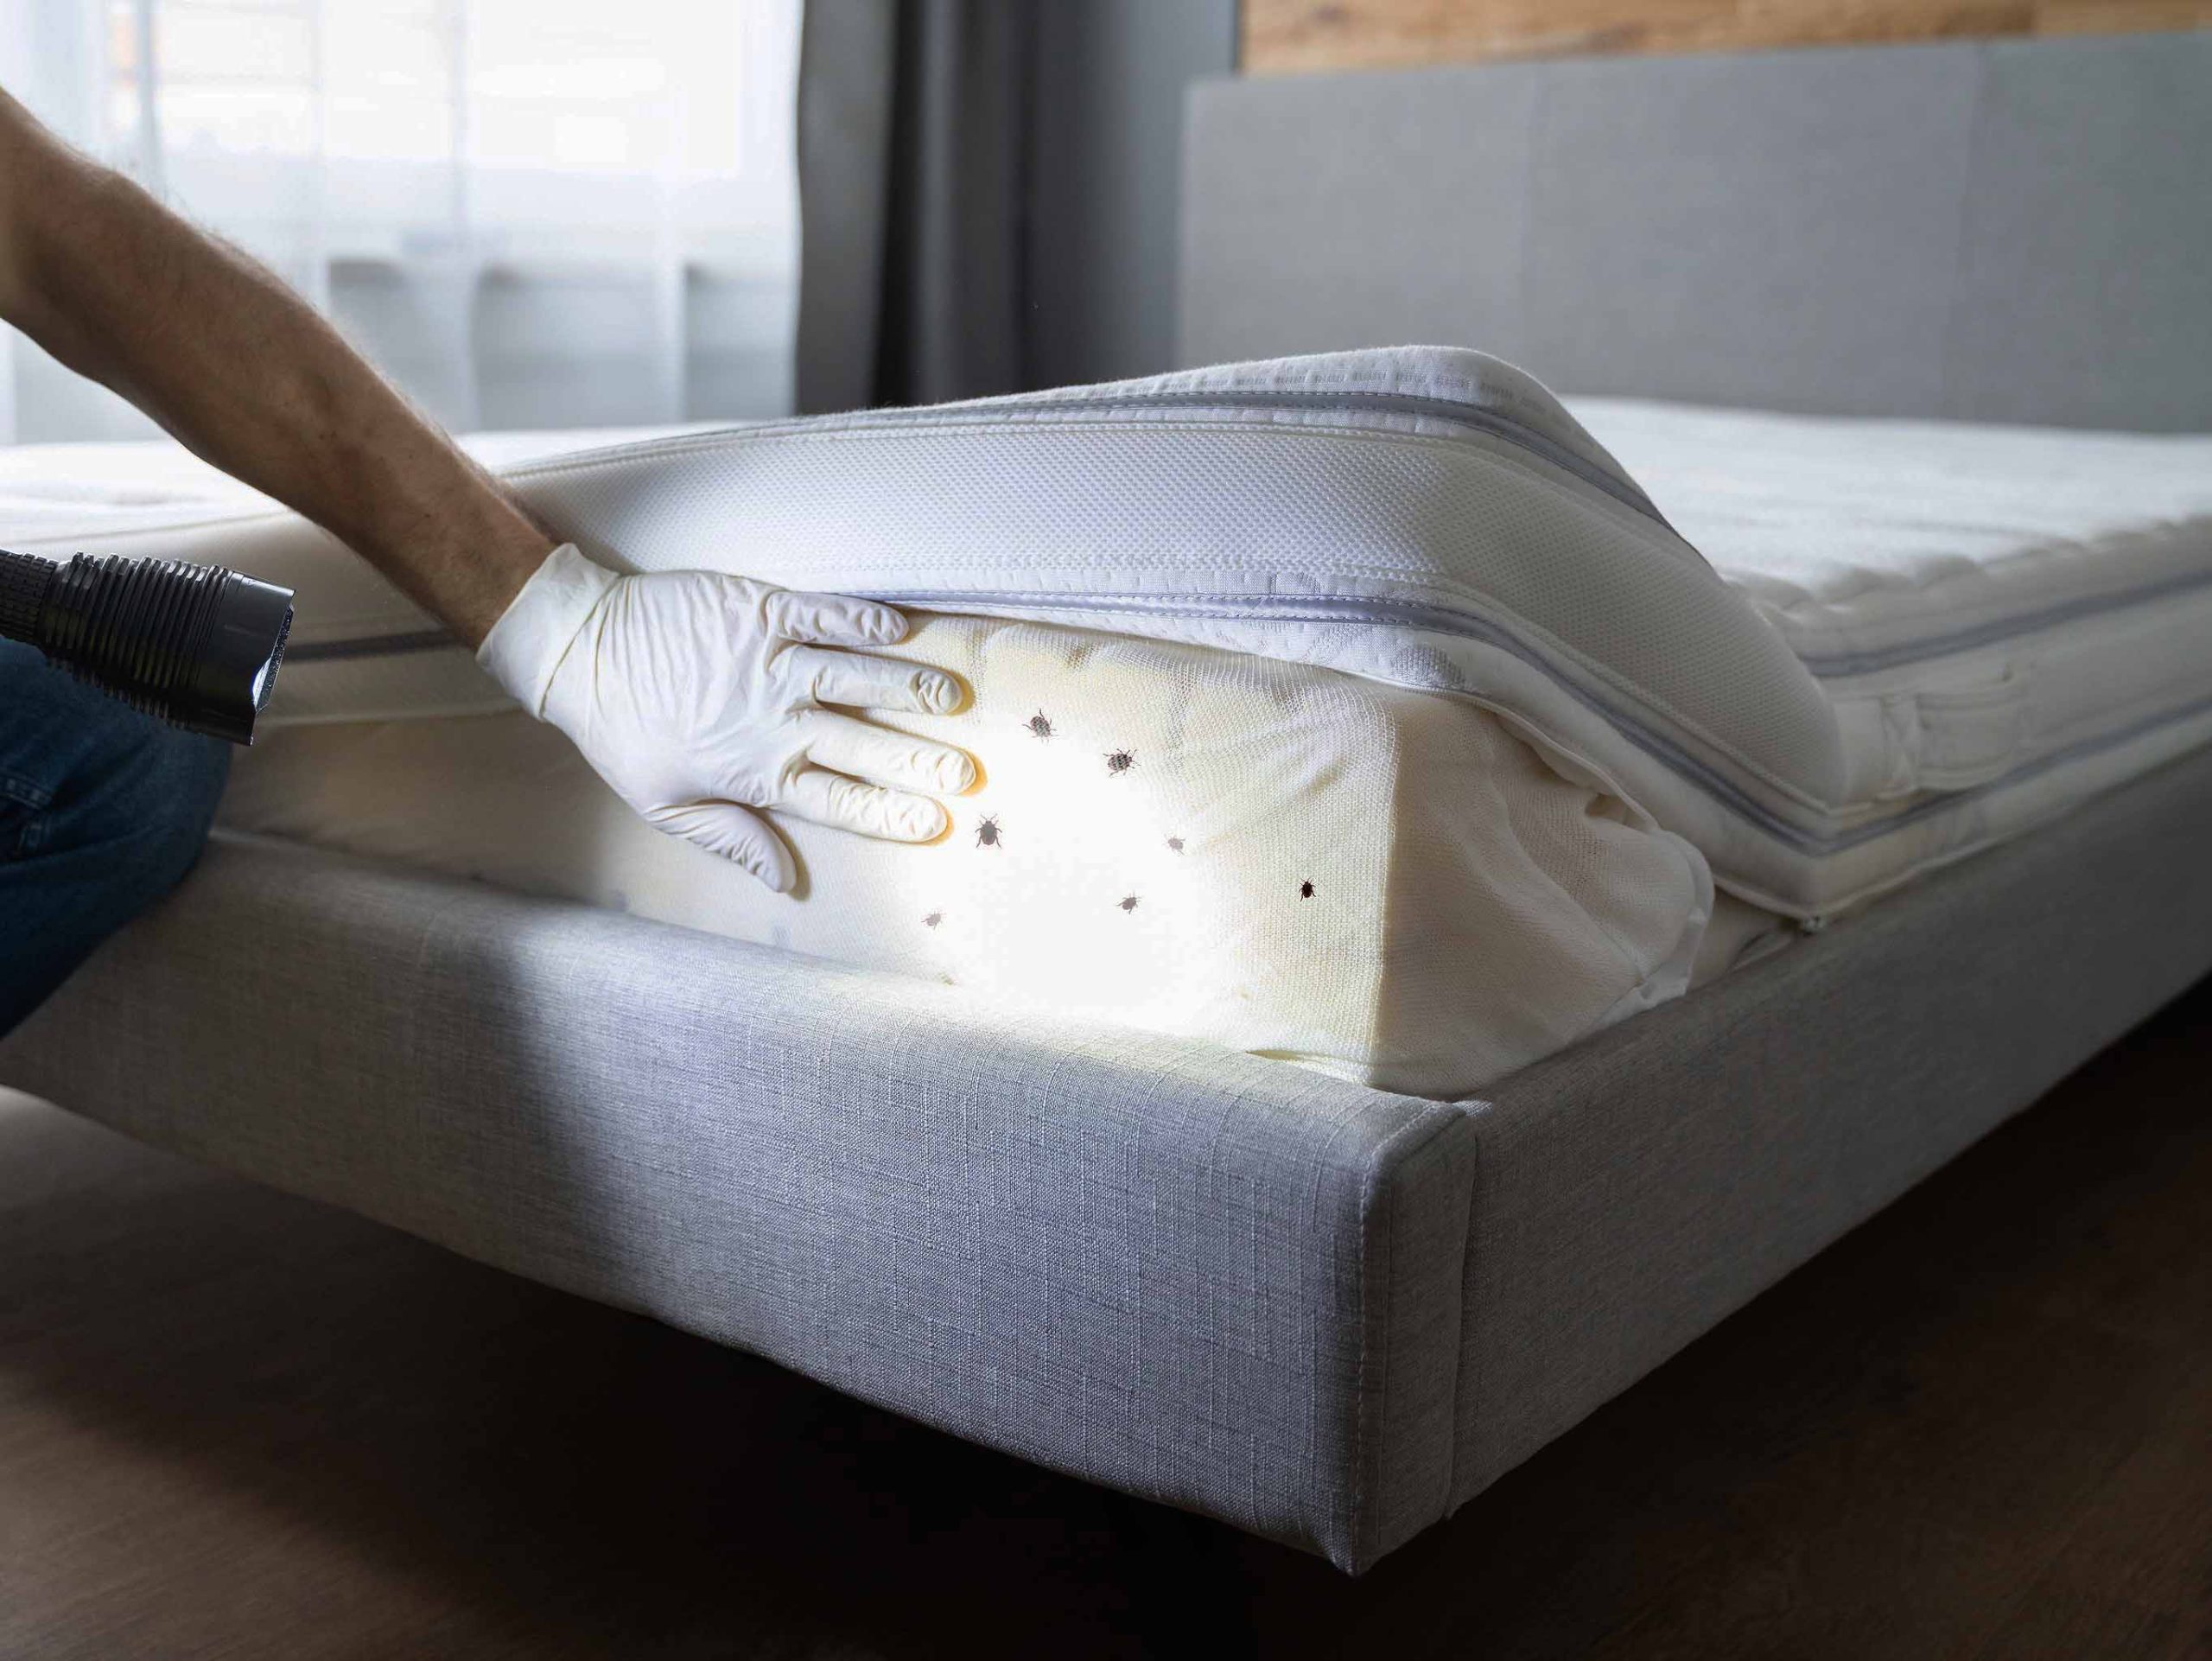 Punaises de lit dans le matelas : comment s'en débarrasser ? (Les solutions)